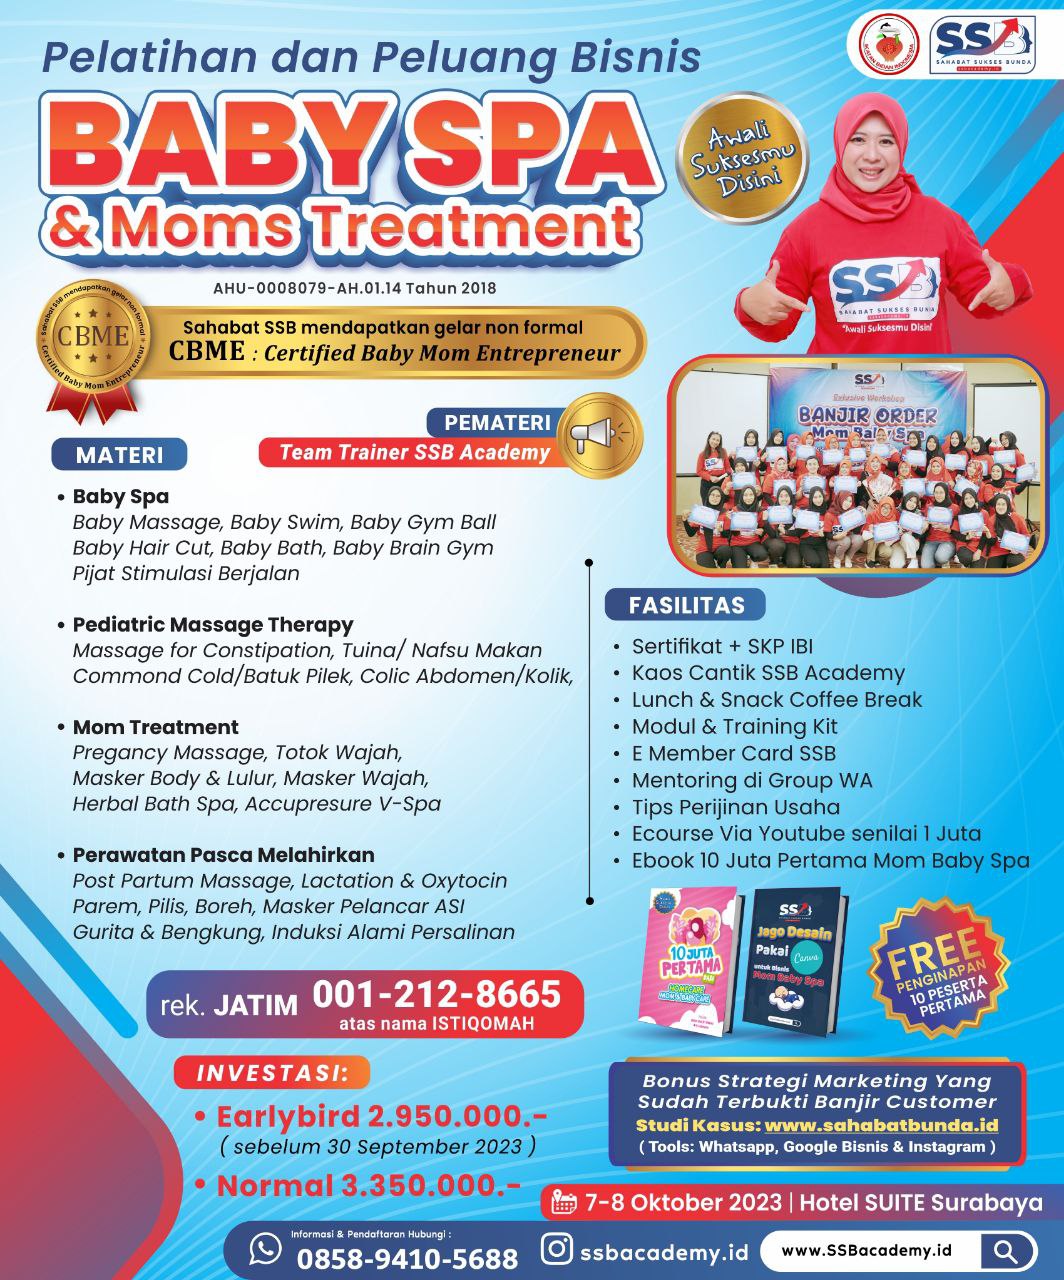 Pelatihan Baby Spa Bersertifikat di Manggarai Timur Bersertifikat CBME ( Certified Baby Moms Entrepreneur )